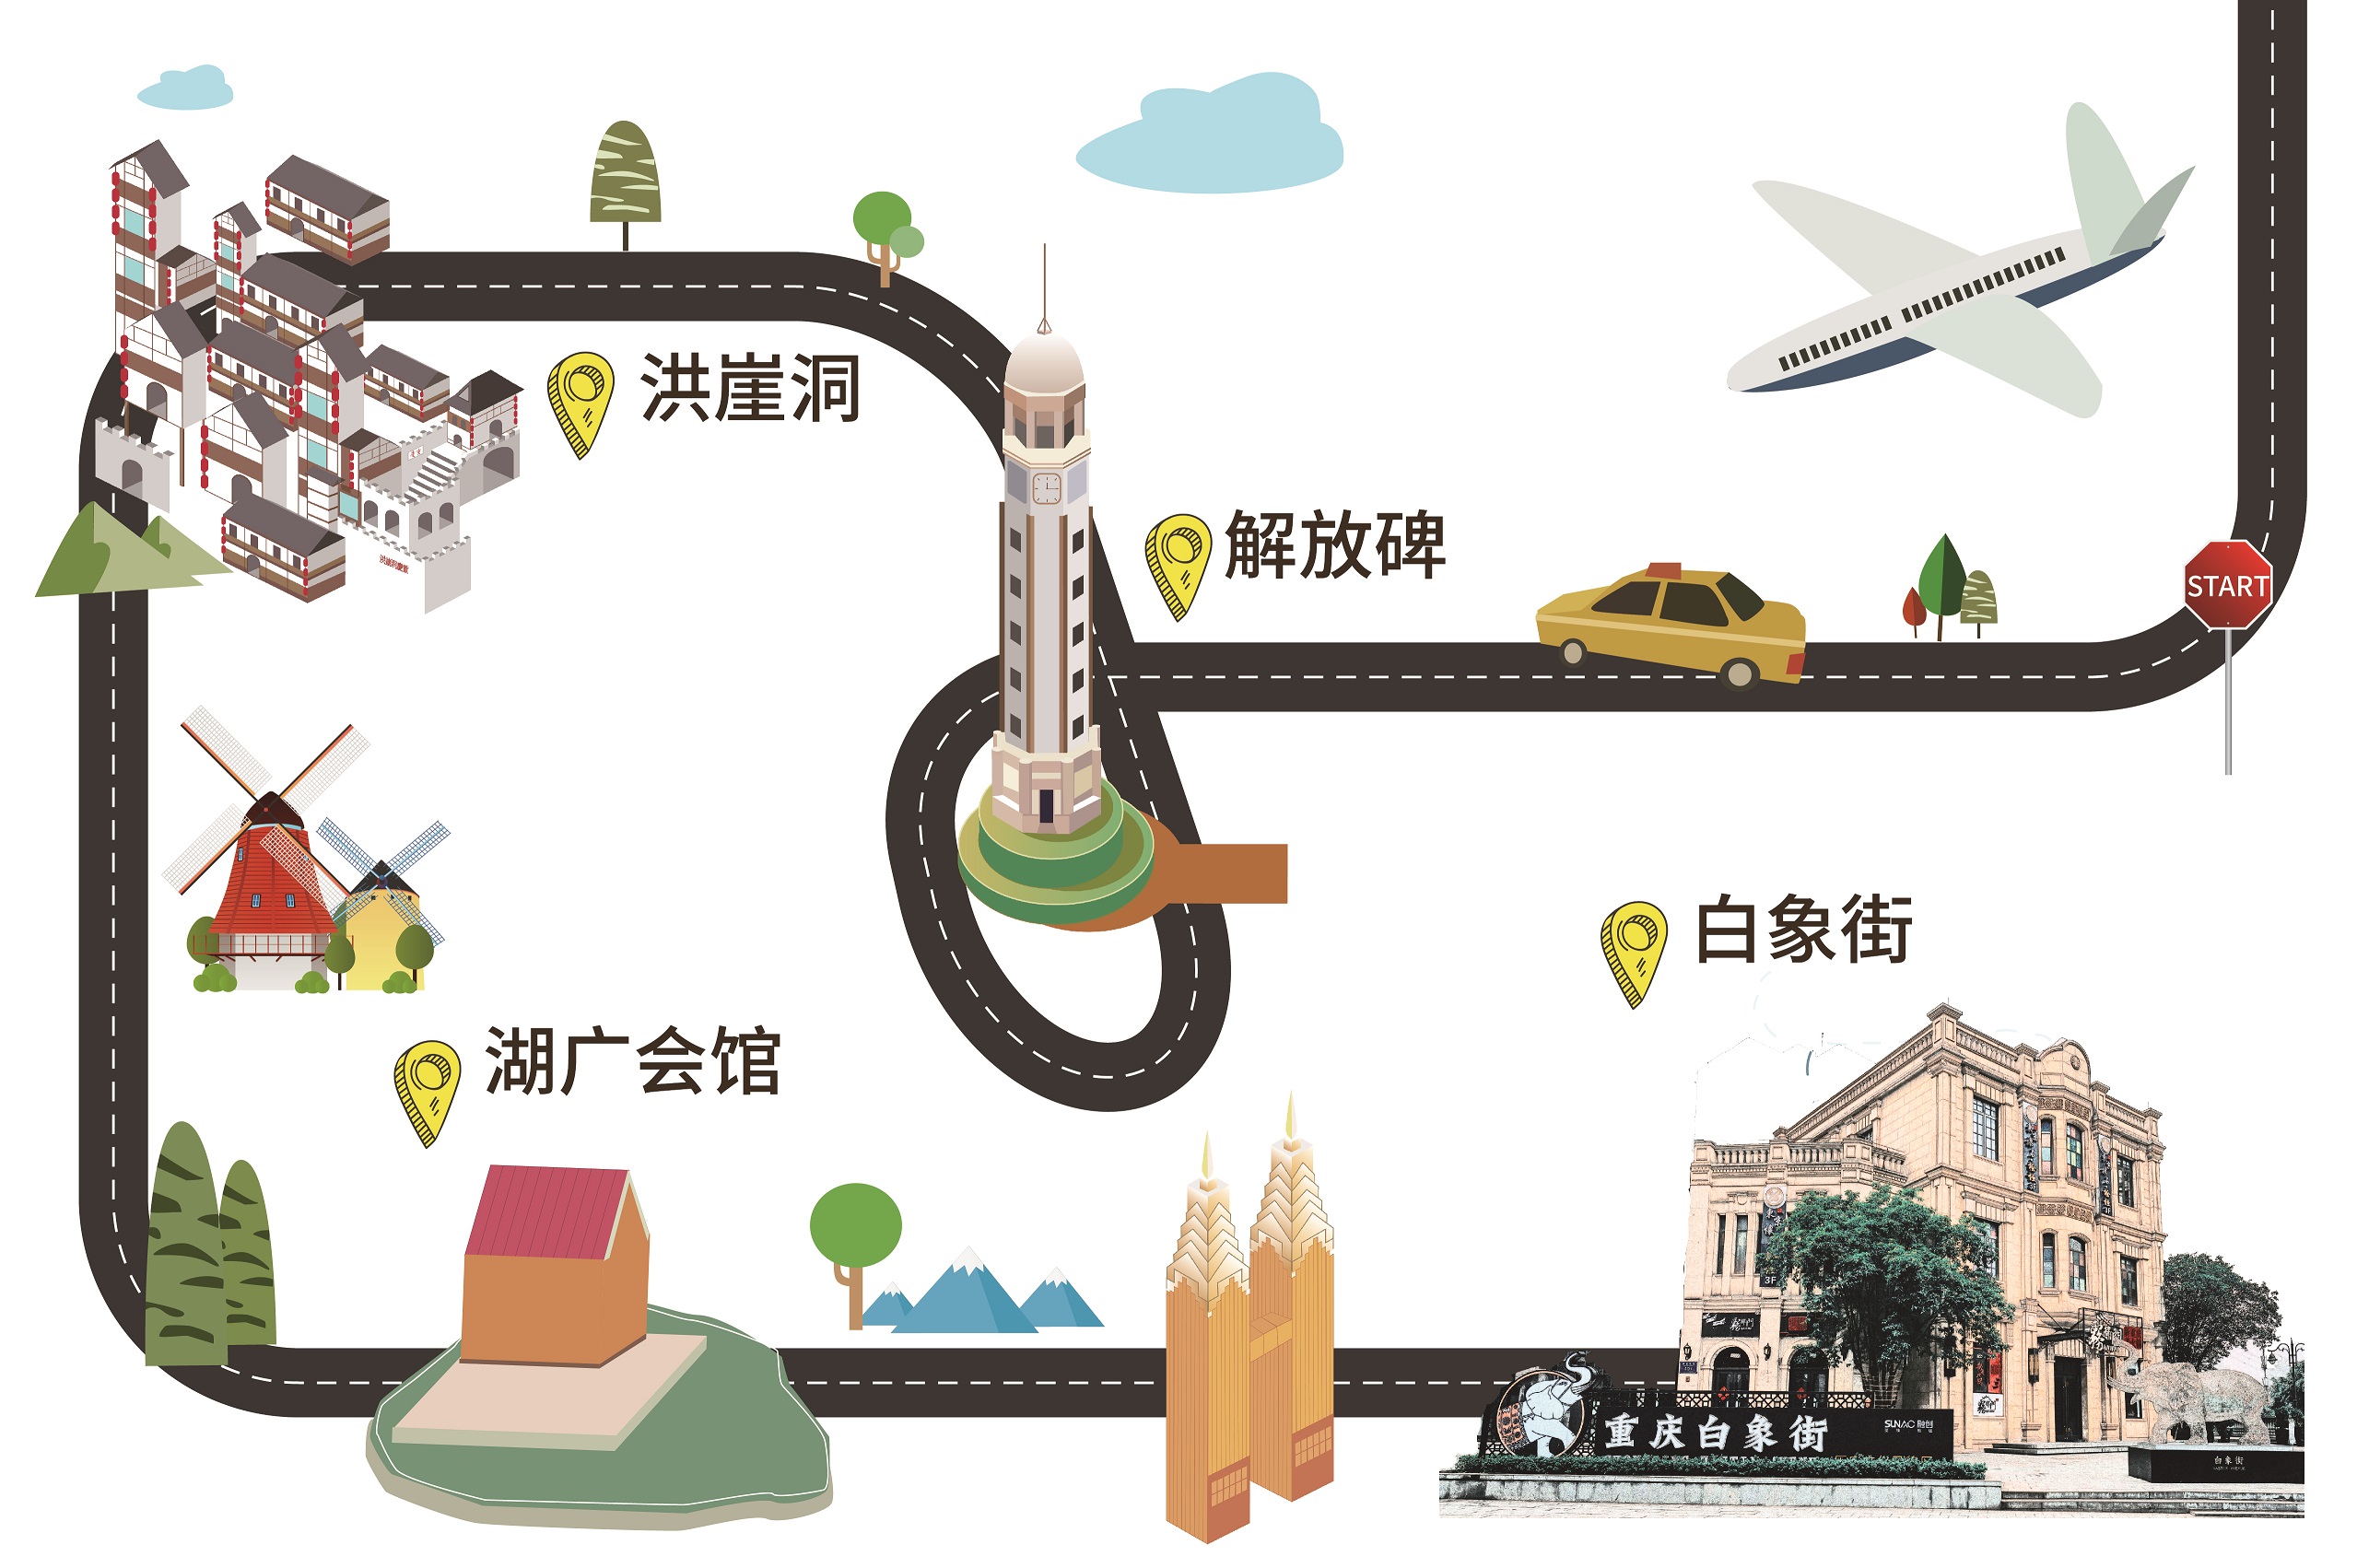 旅行手账:环游重庆渝中半岛,这些网红打卡